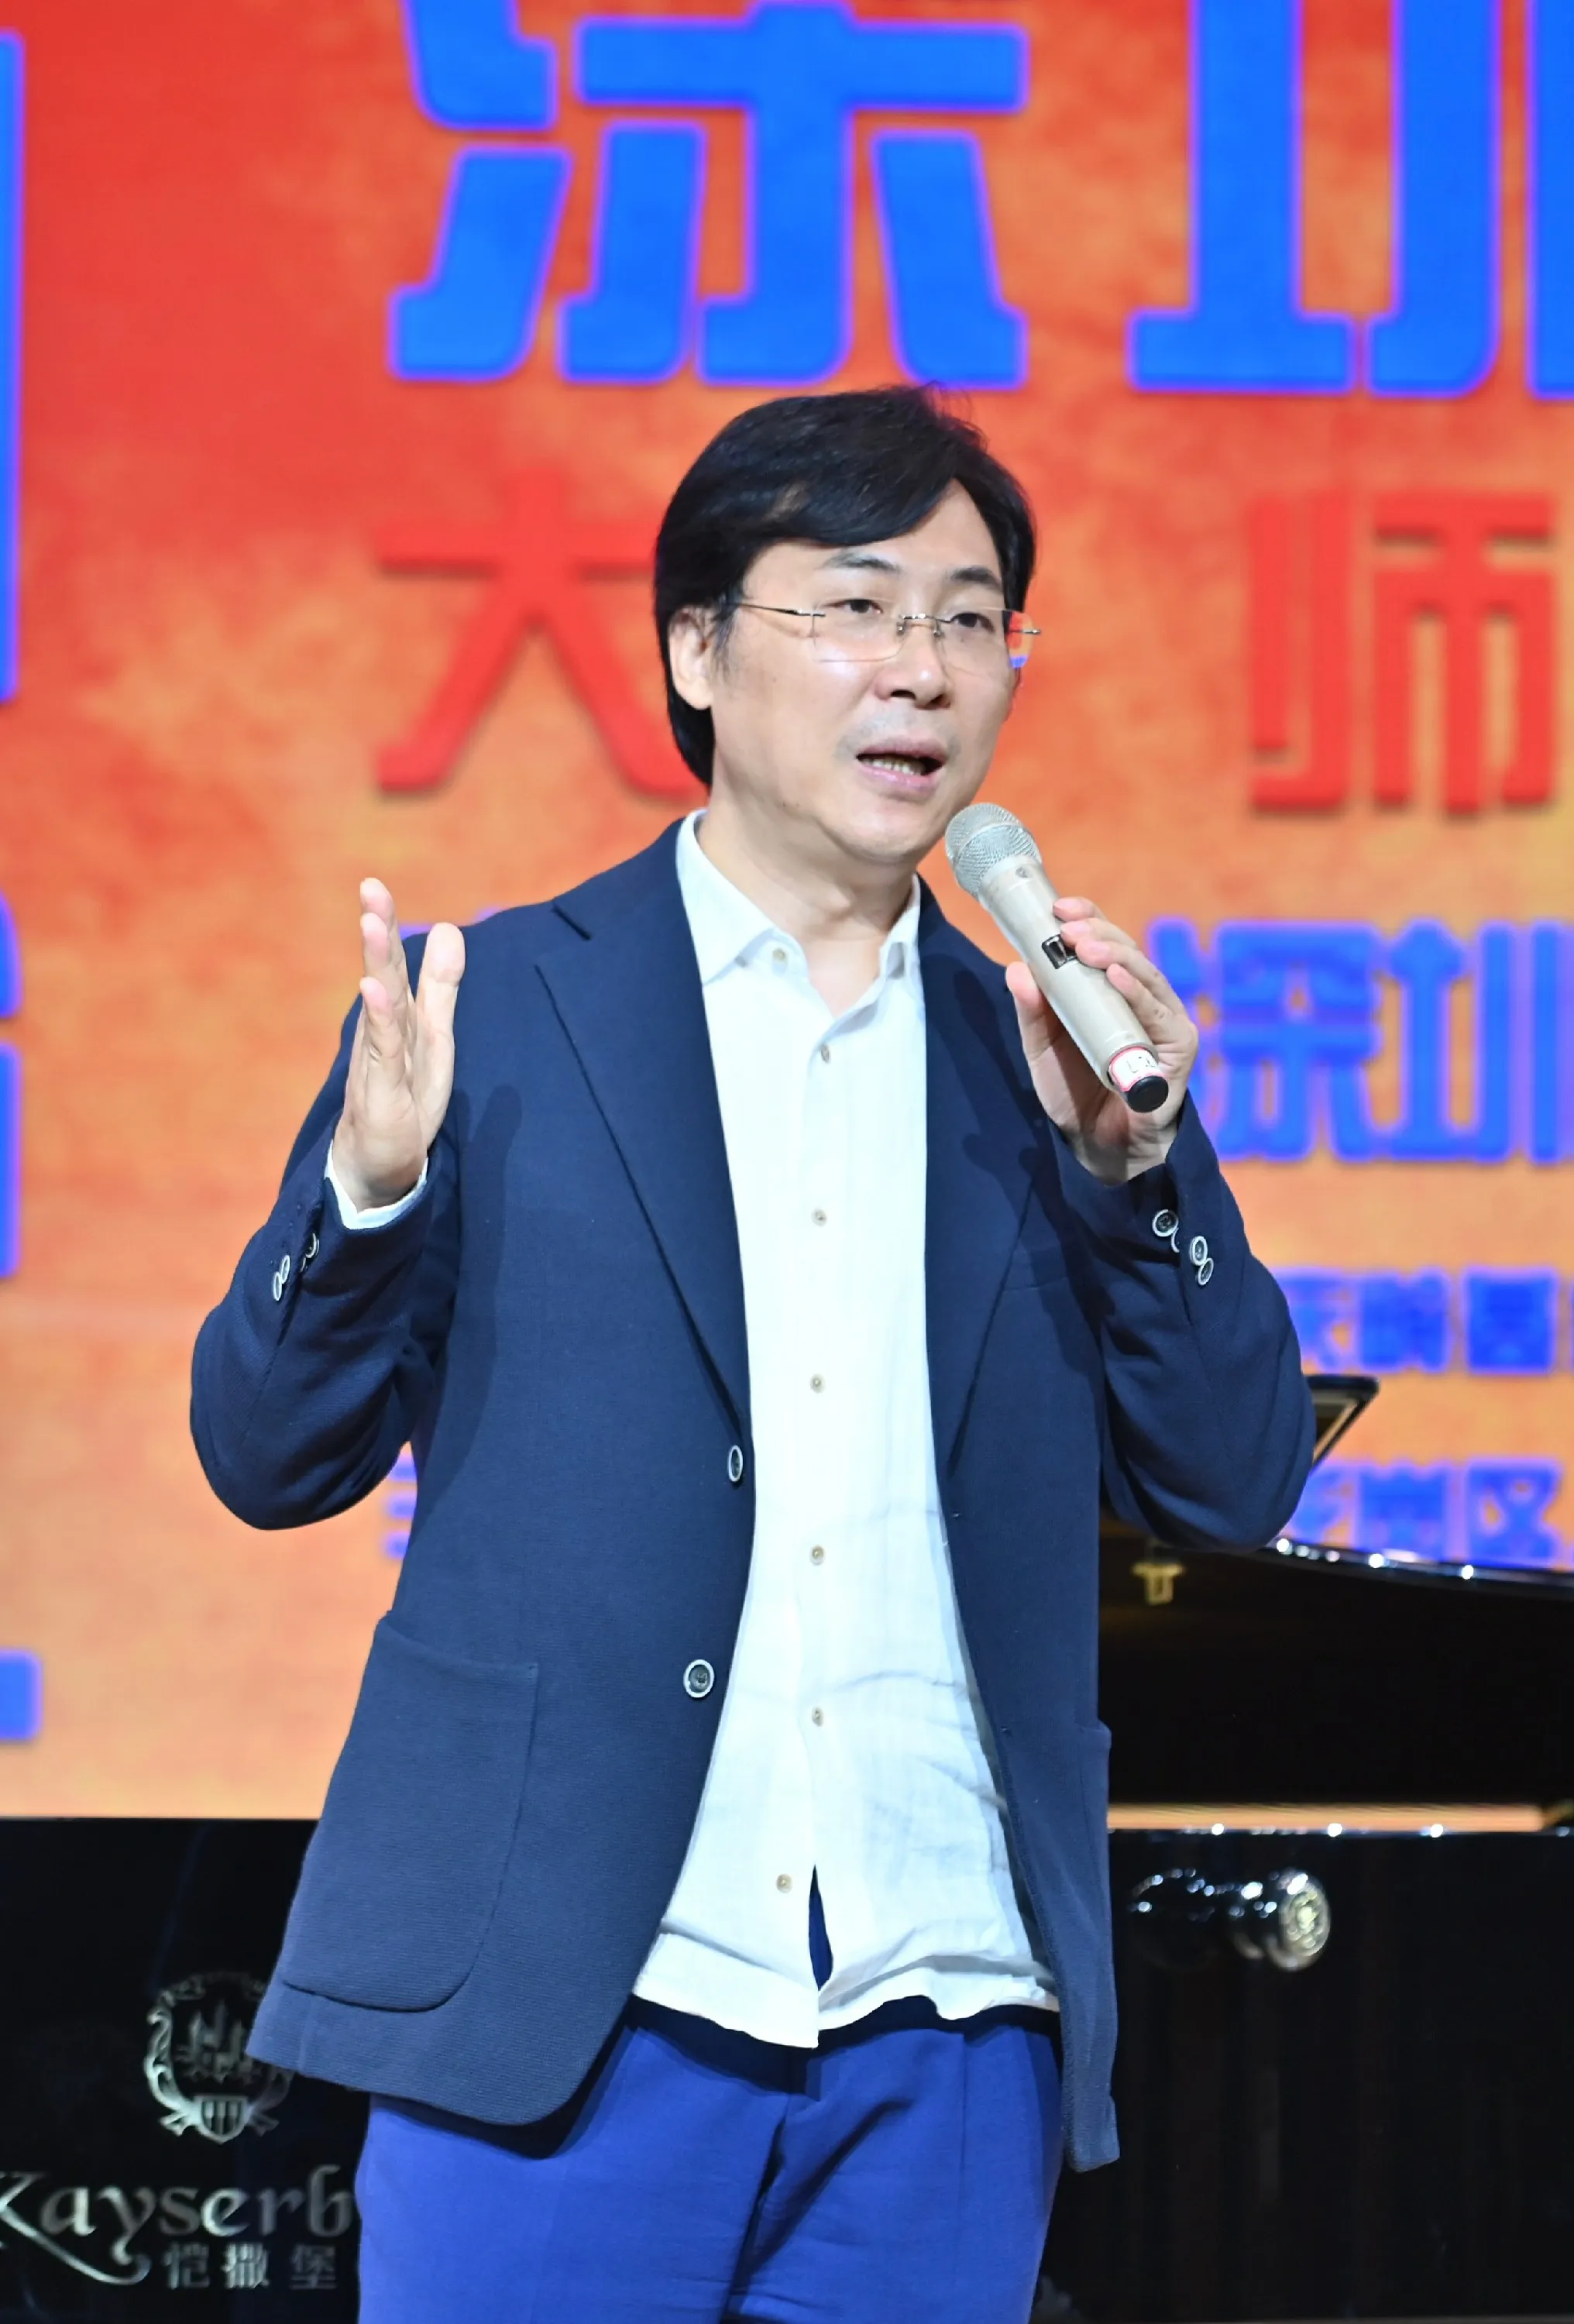  Lei Jia 发布“中国声乐人才培养计划·大师公开课”系列公益课程7.jpg